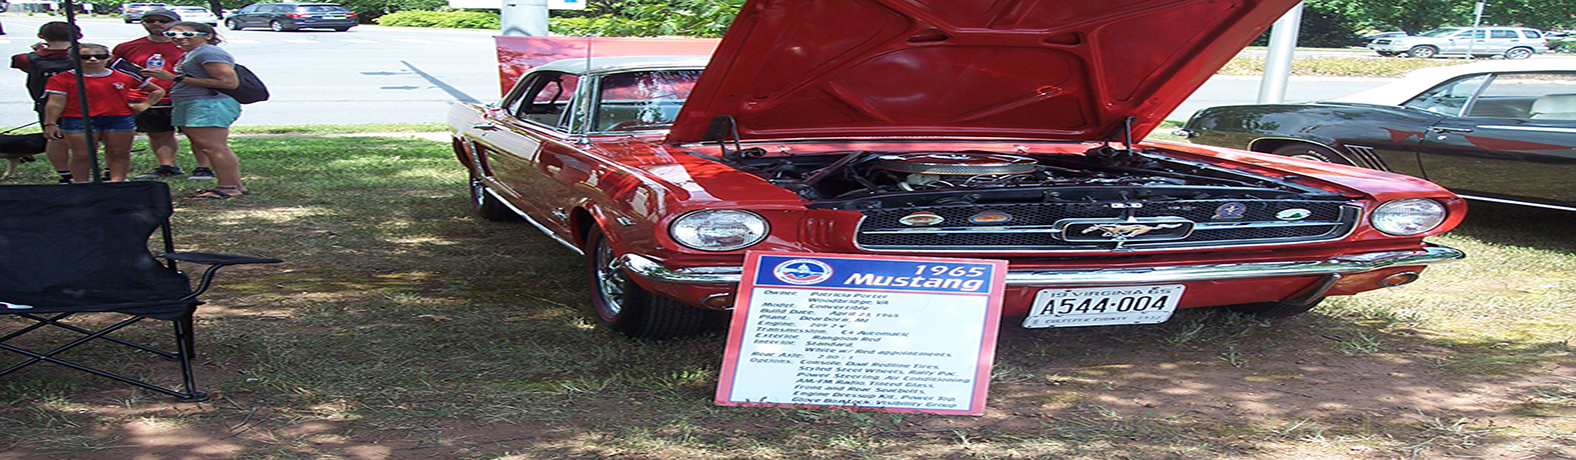 Car_Mustang